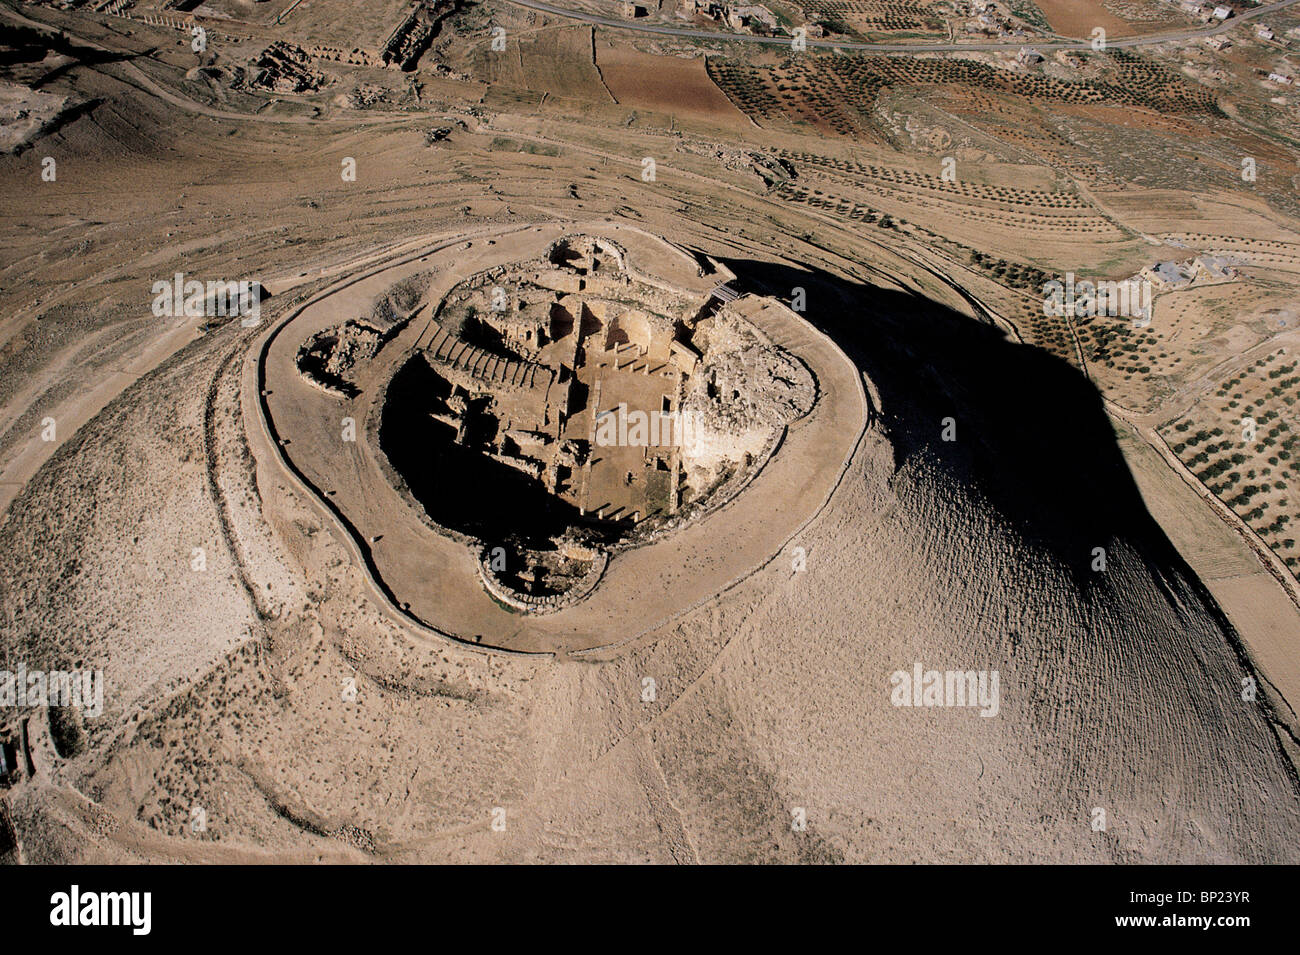 HERODIUM situé dans le désert de Judée, à l'EST DE BETHLECHEM. La forteresse a été construite par le roi Hérode sur une colline artificielle AVEC PALA Banque D'Images